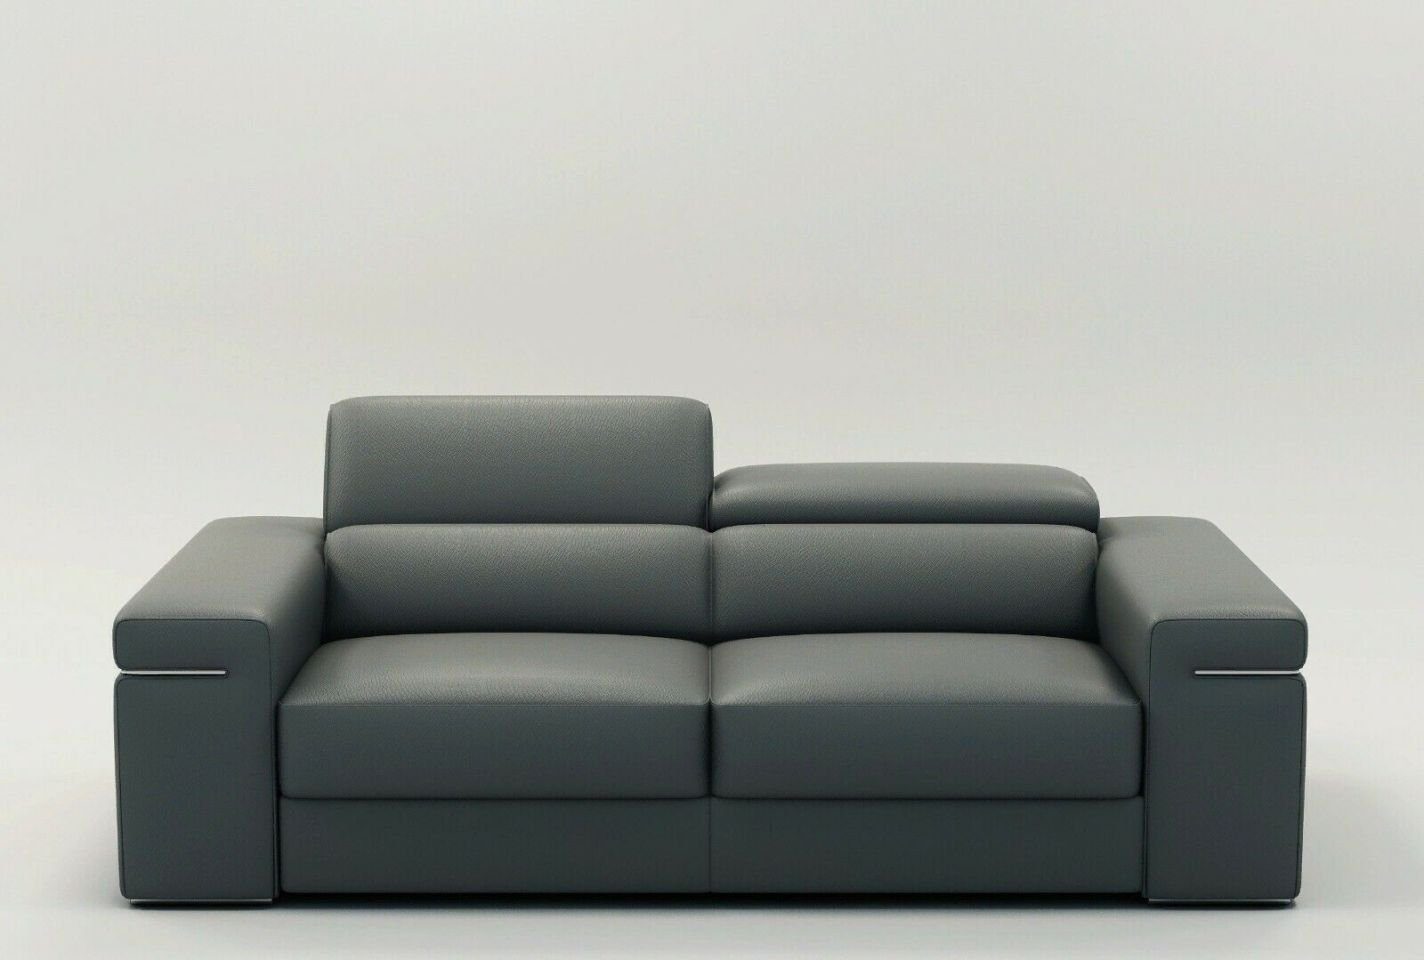 JVmoebel Sofa Graue Couch Polser Sitz 3 Sitzer XXL Big Sofas Couchen Leder, Made in Europe